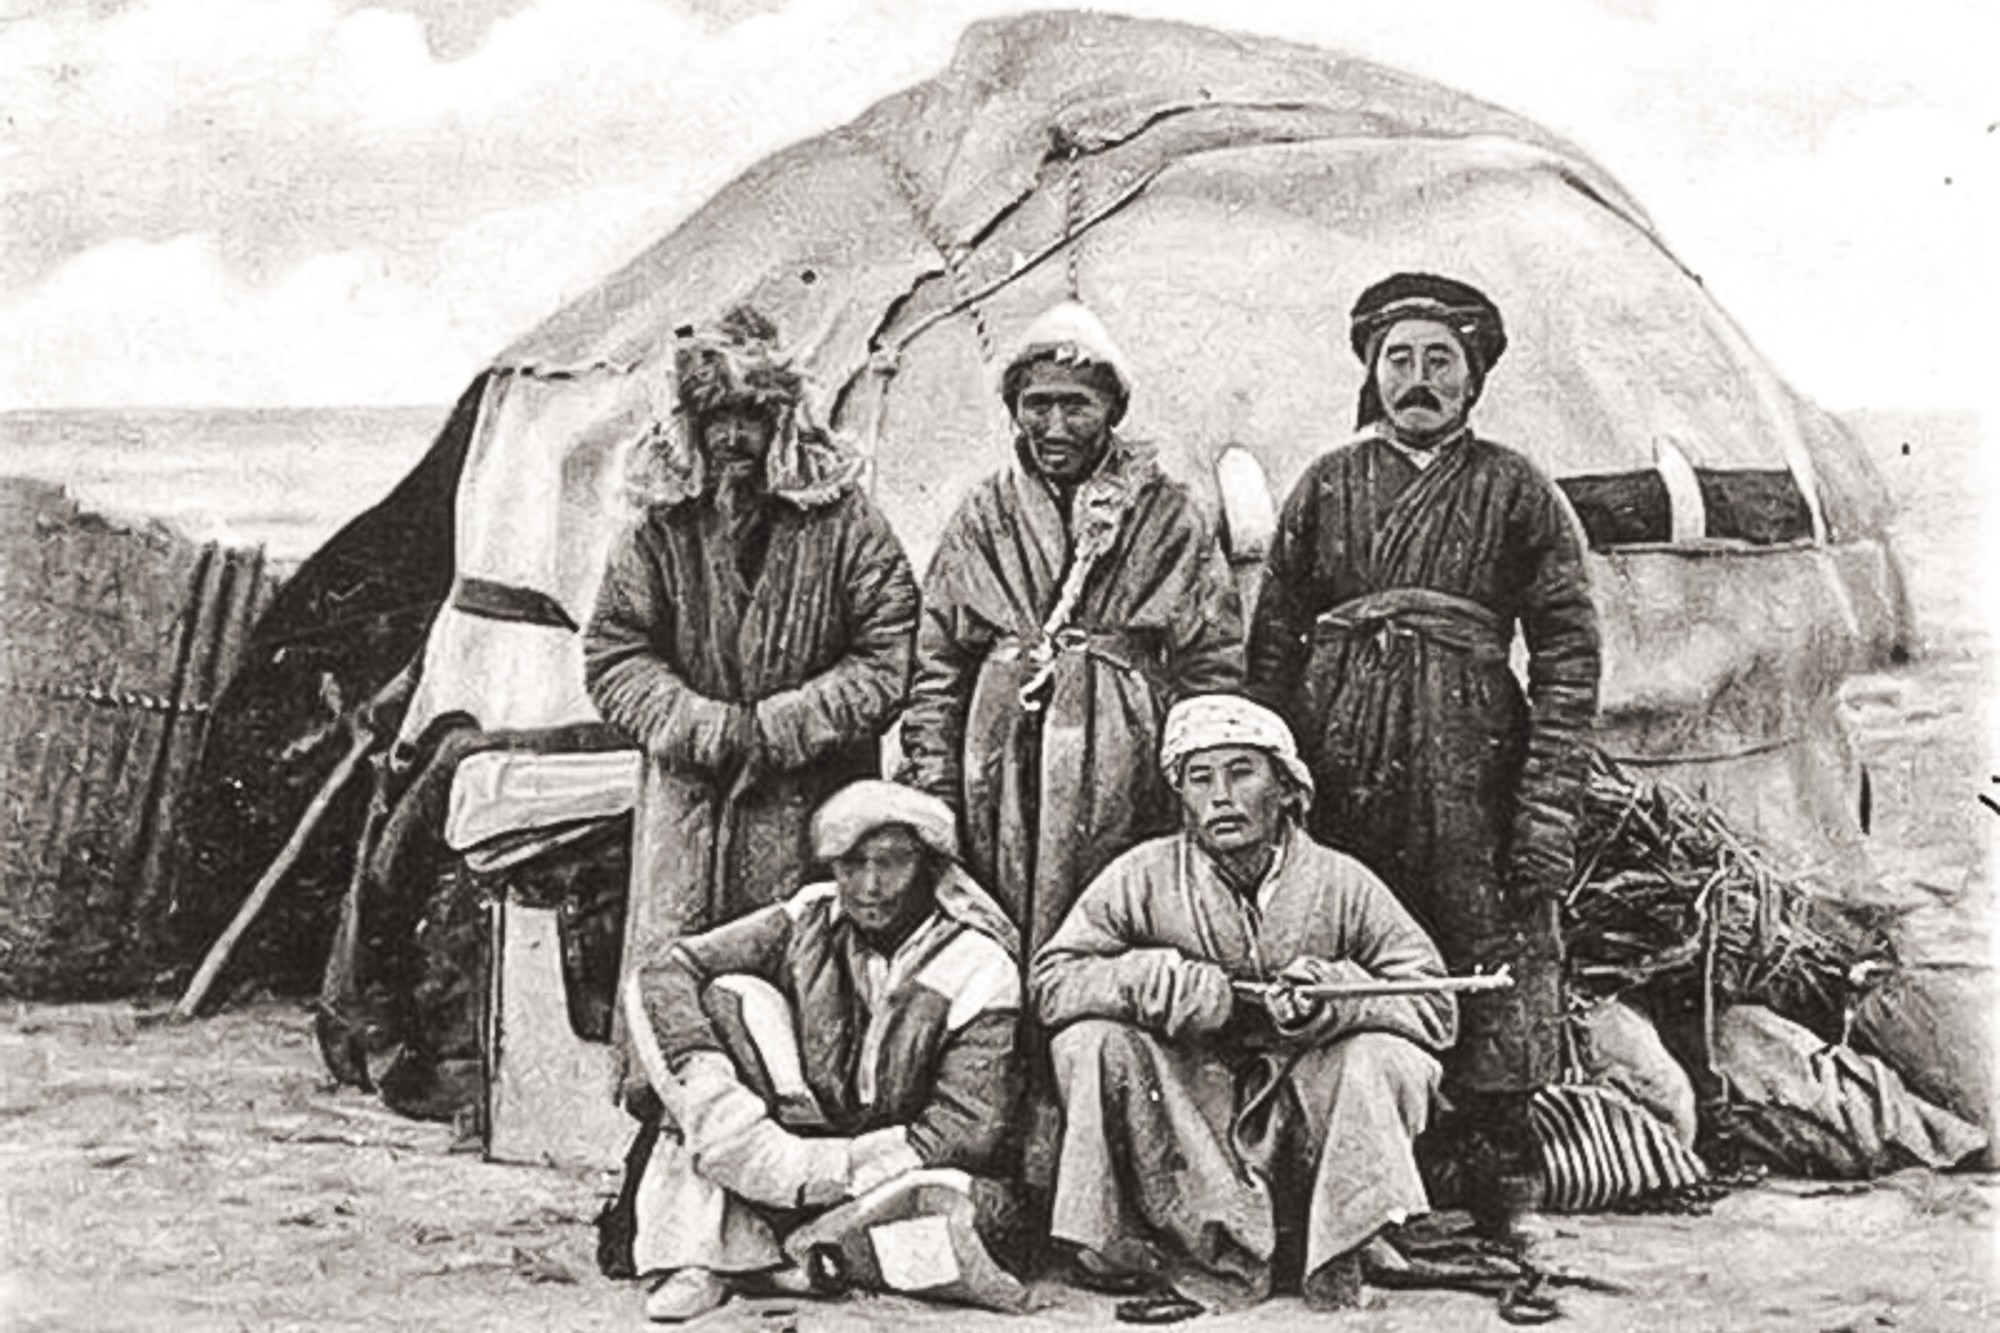 История казахстана 19 века. Юрты алтайцев 19 век. Киргизские кочевники 19 век. Киргизы Азии 19 век. Казахская степь 19 век.